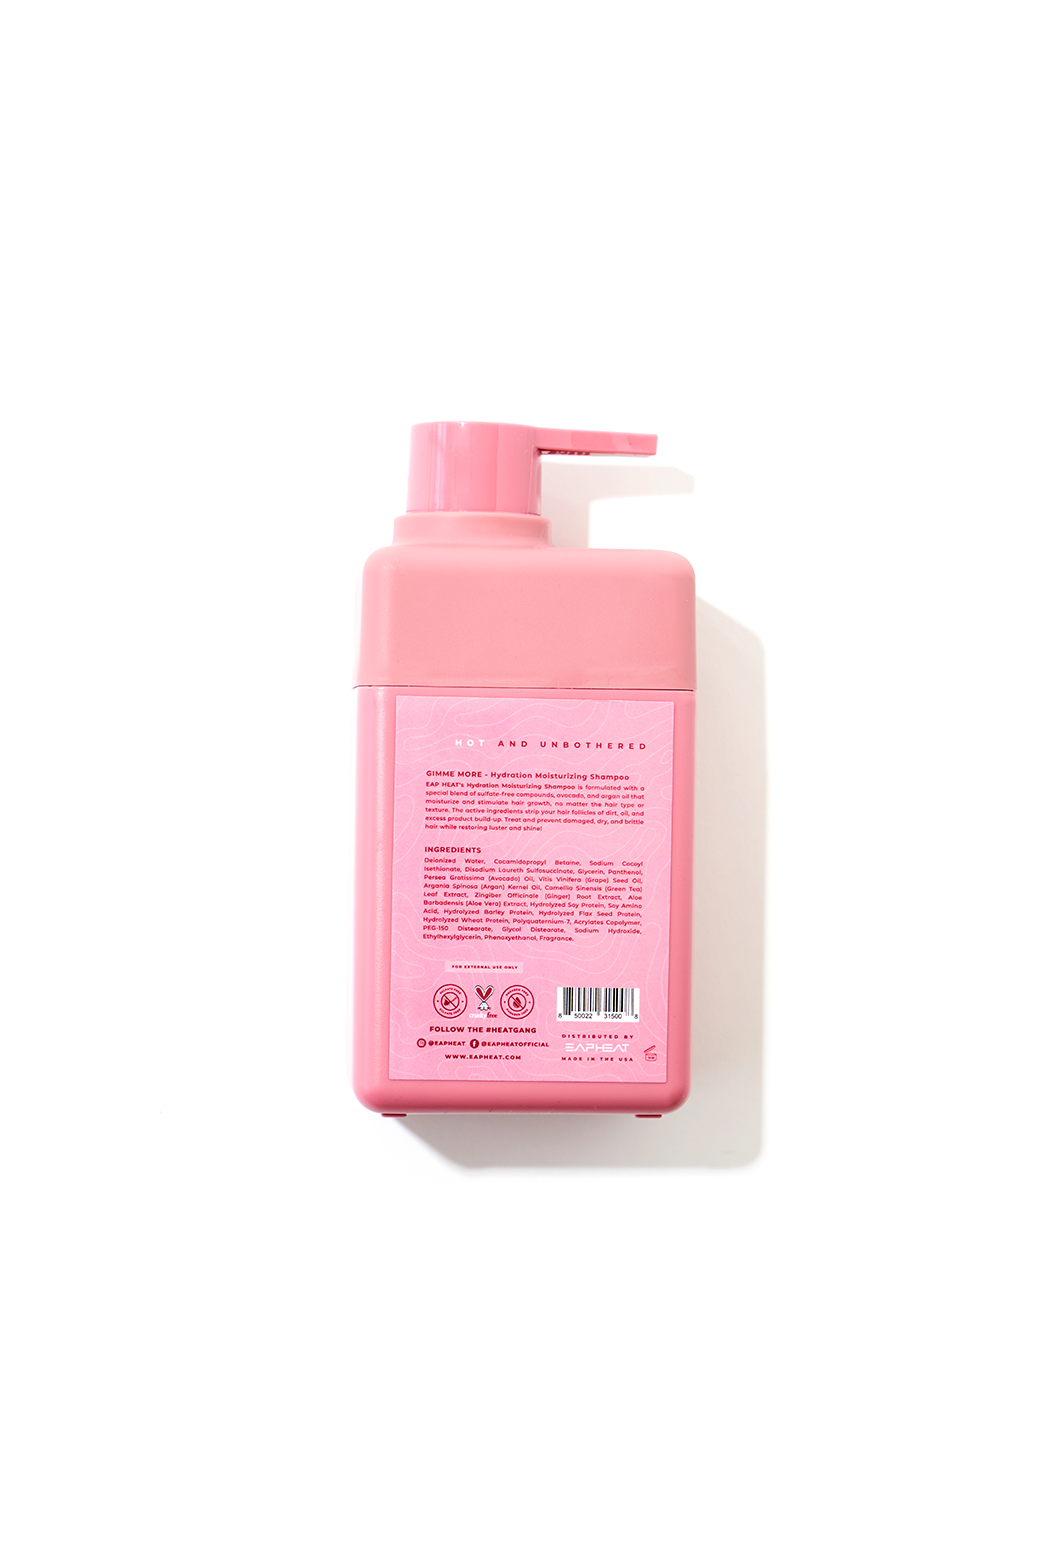 GIMME MORE | Hydration Moisturizing Shampoo